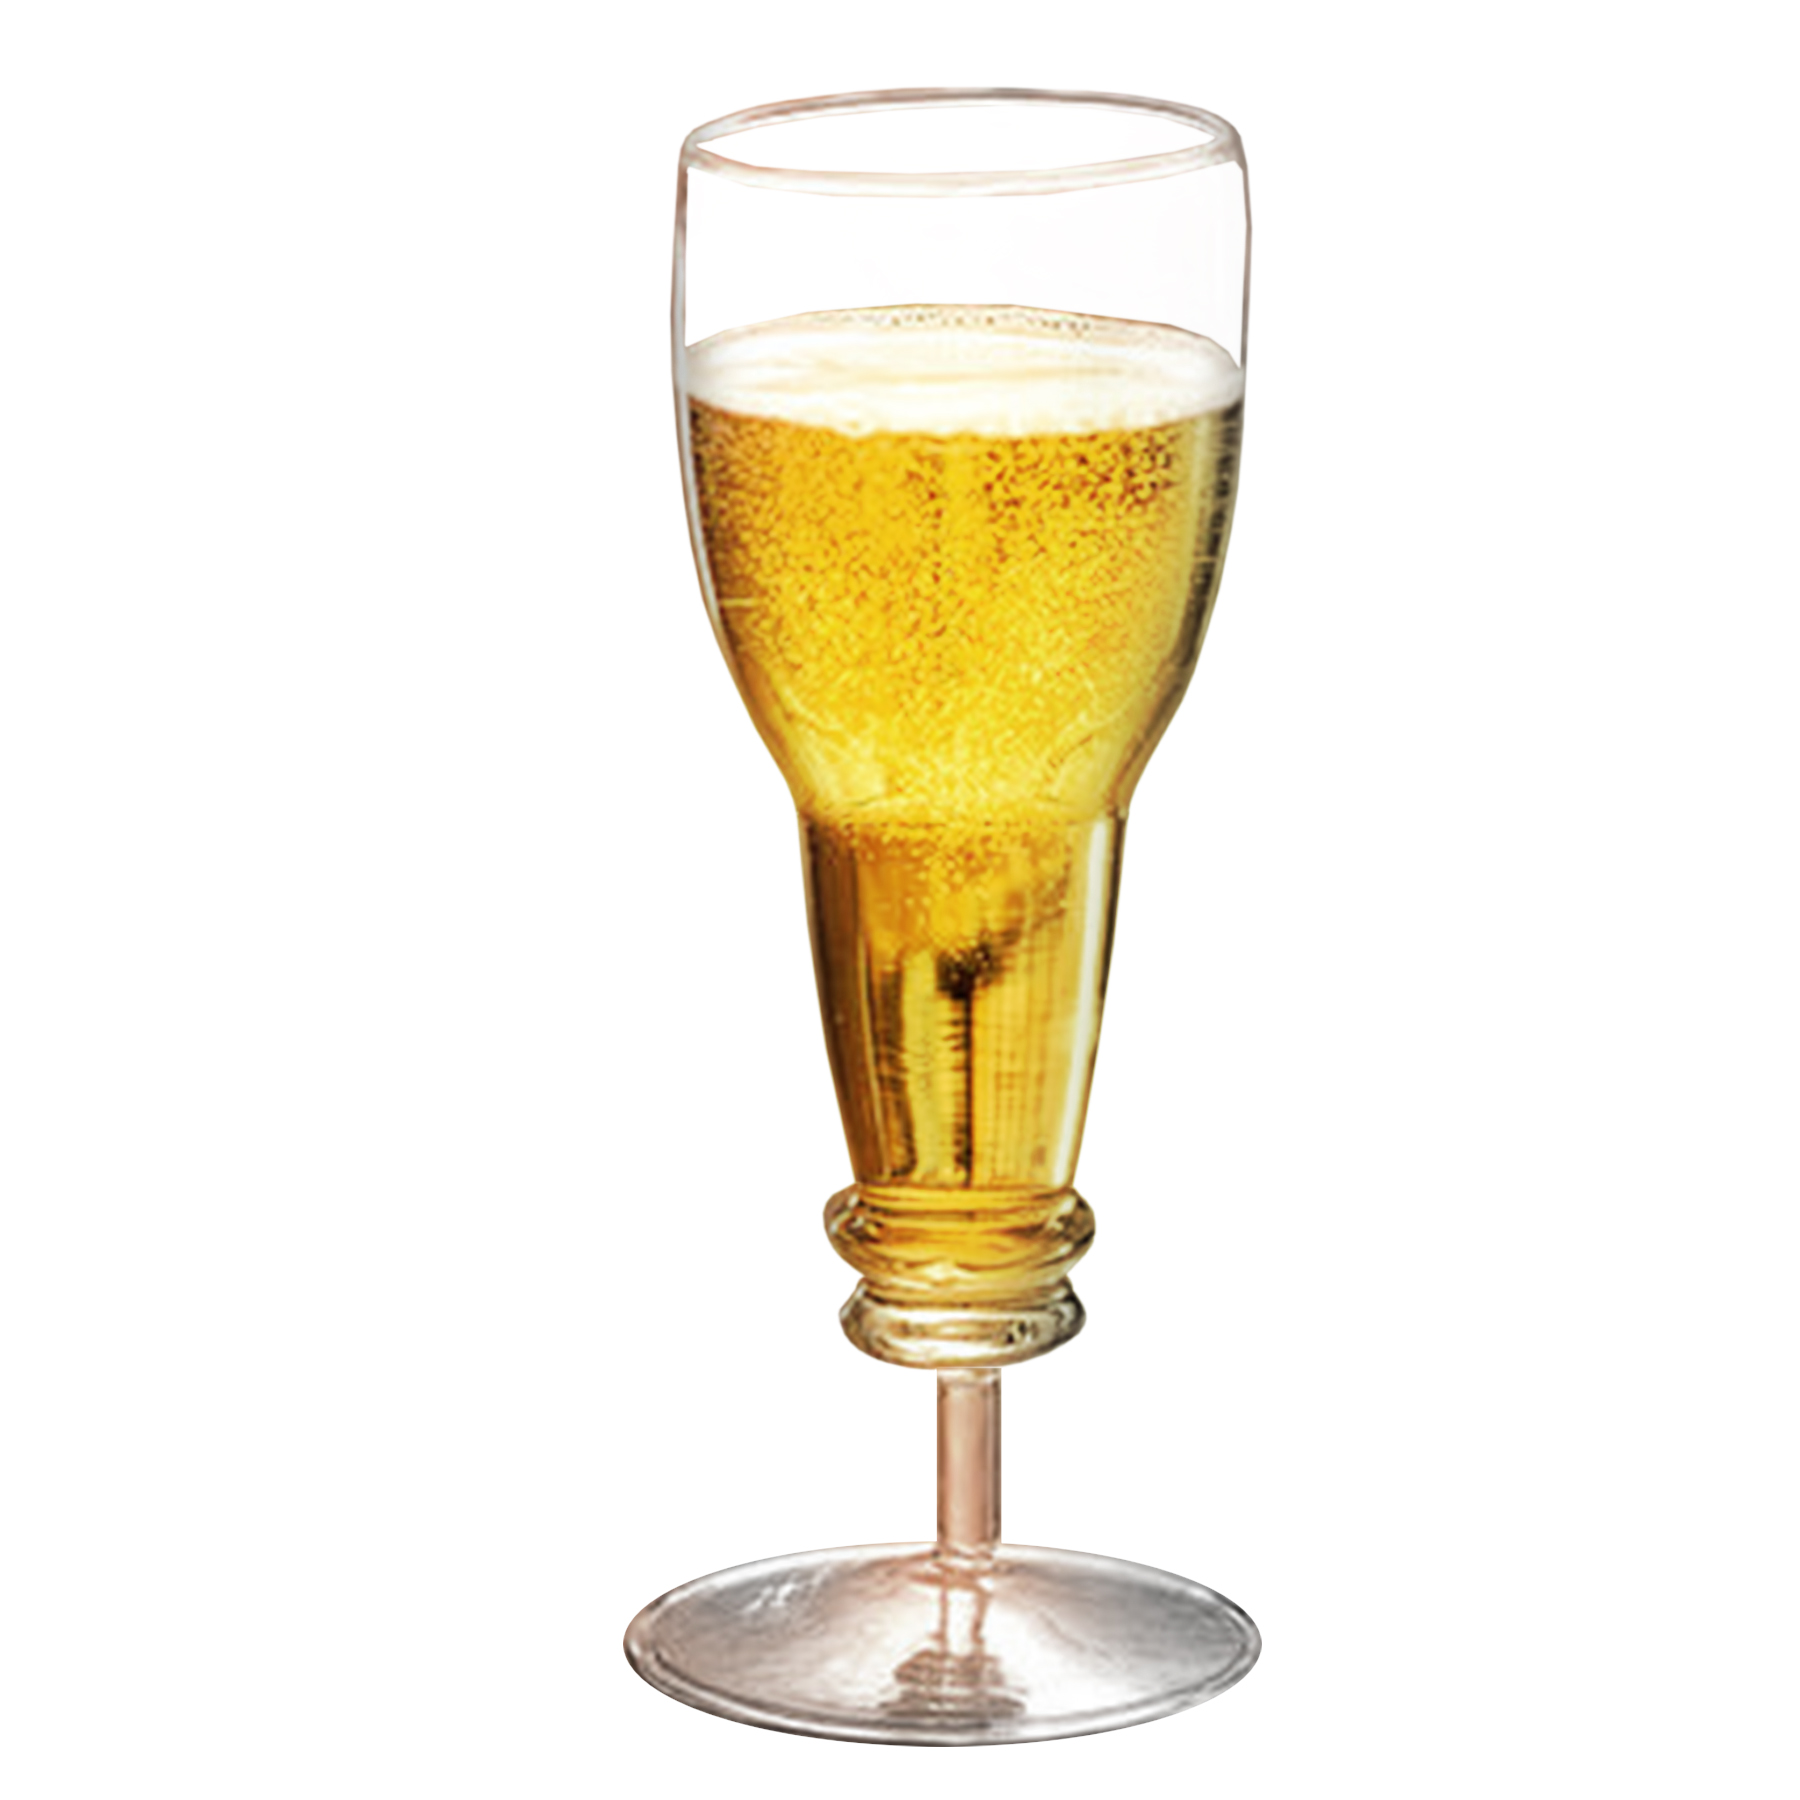 Sektglas in Bierflaschen Form 3879 - 3